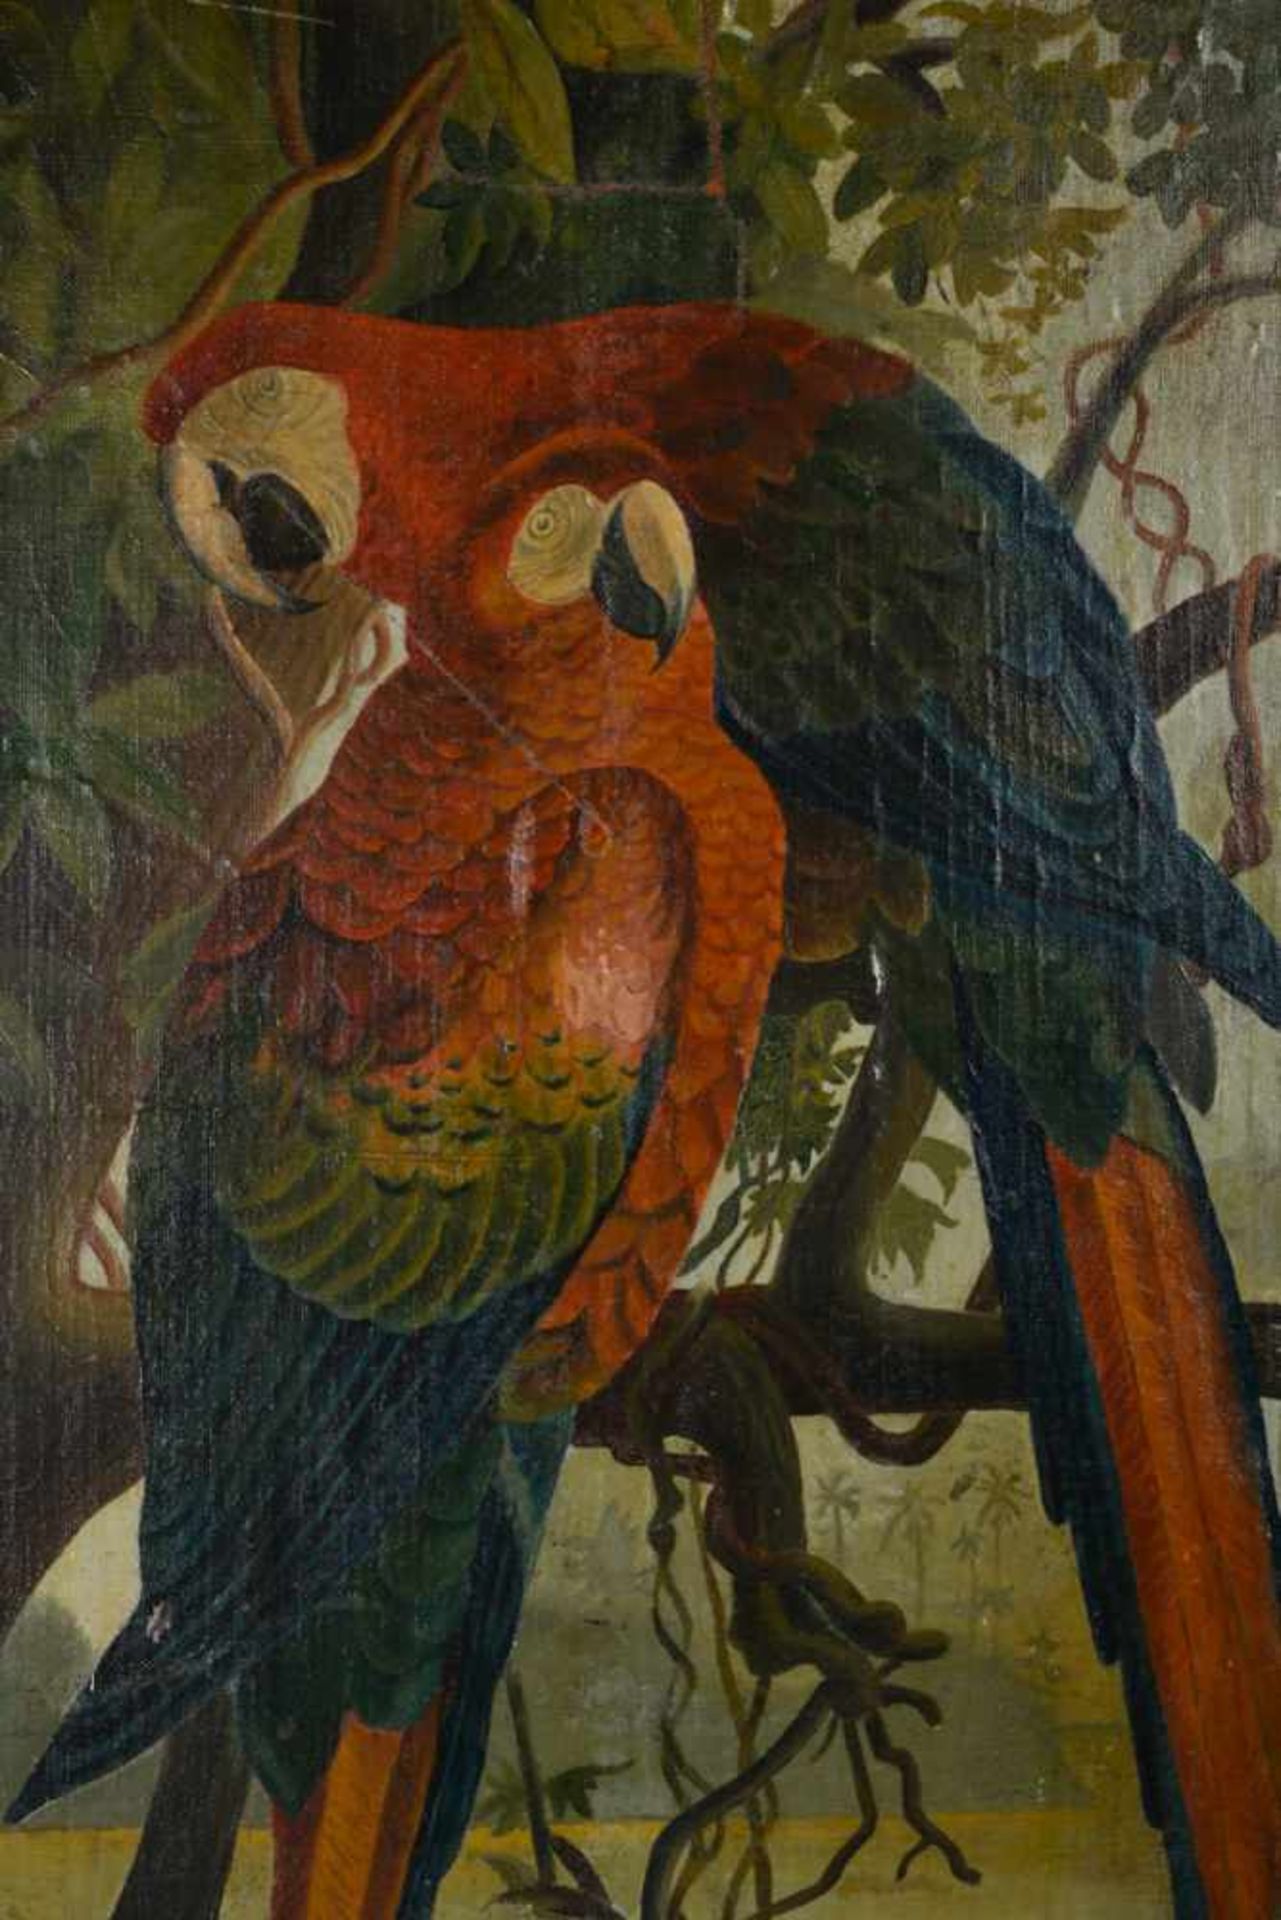 Papageienvögel in natürlicher Umgebung. Öl auf Leinwand auf Holz kaschiert, Datierung um 1890, - Bild 3 aus 7